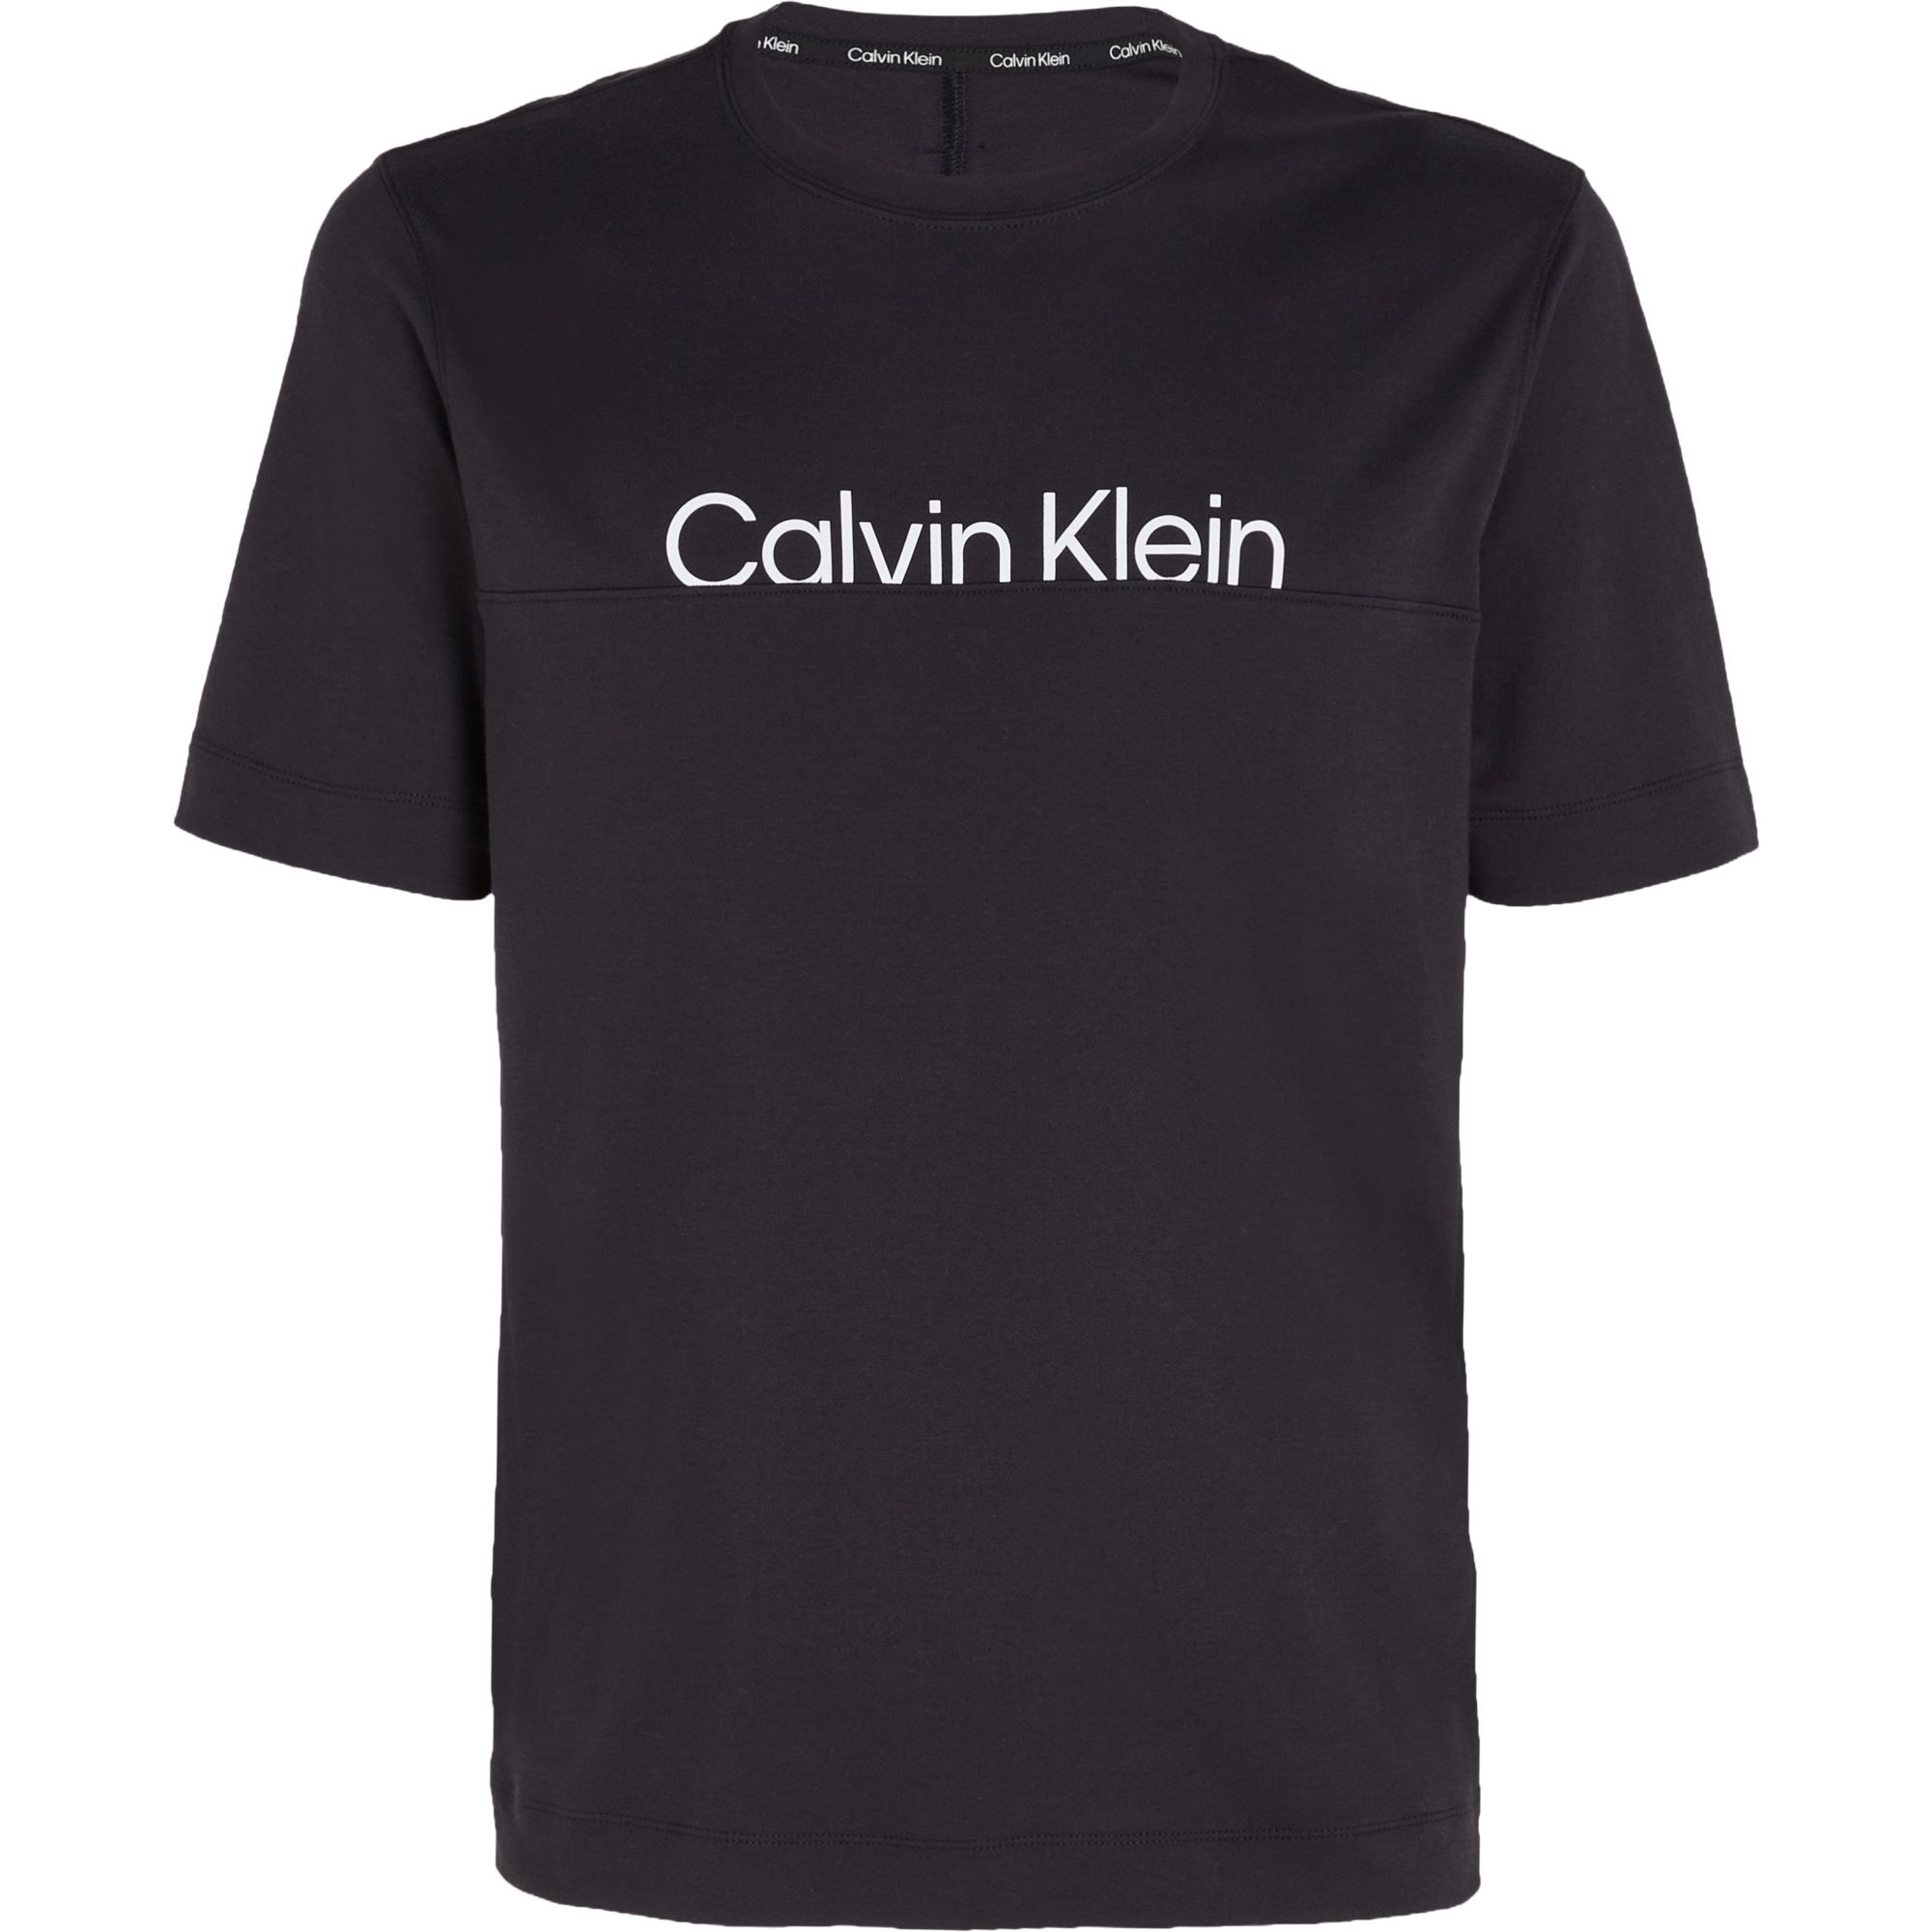 Ss Calvin Klein Calvin Klein - 3283353